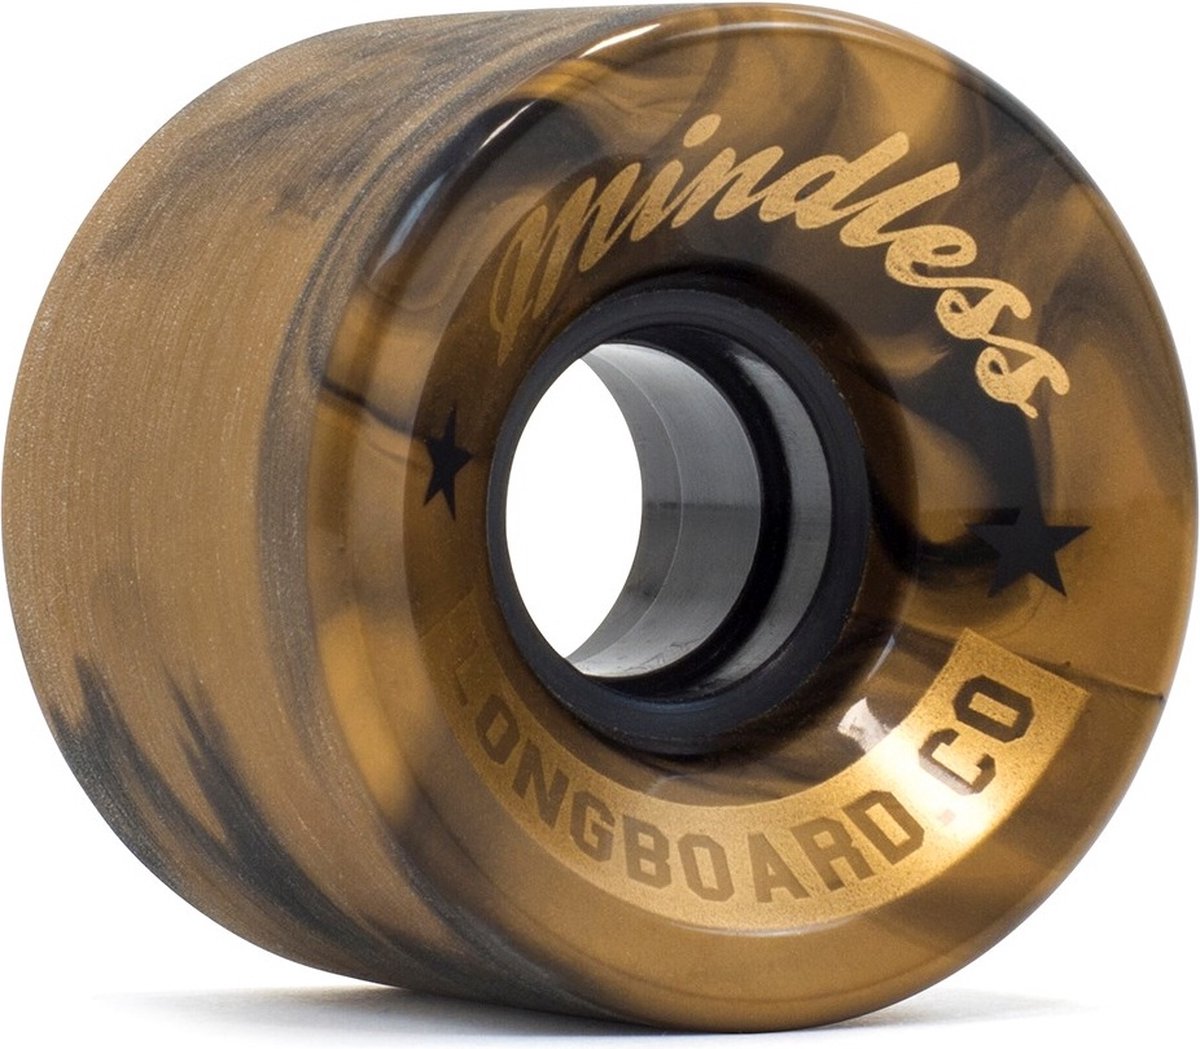 Mindless cruiser wielen 60mm swirl bronze